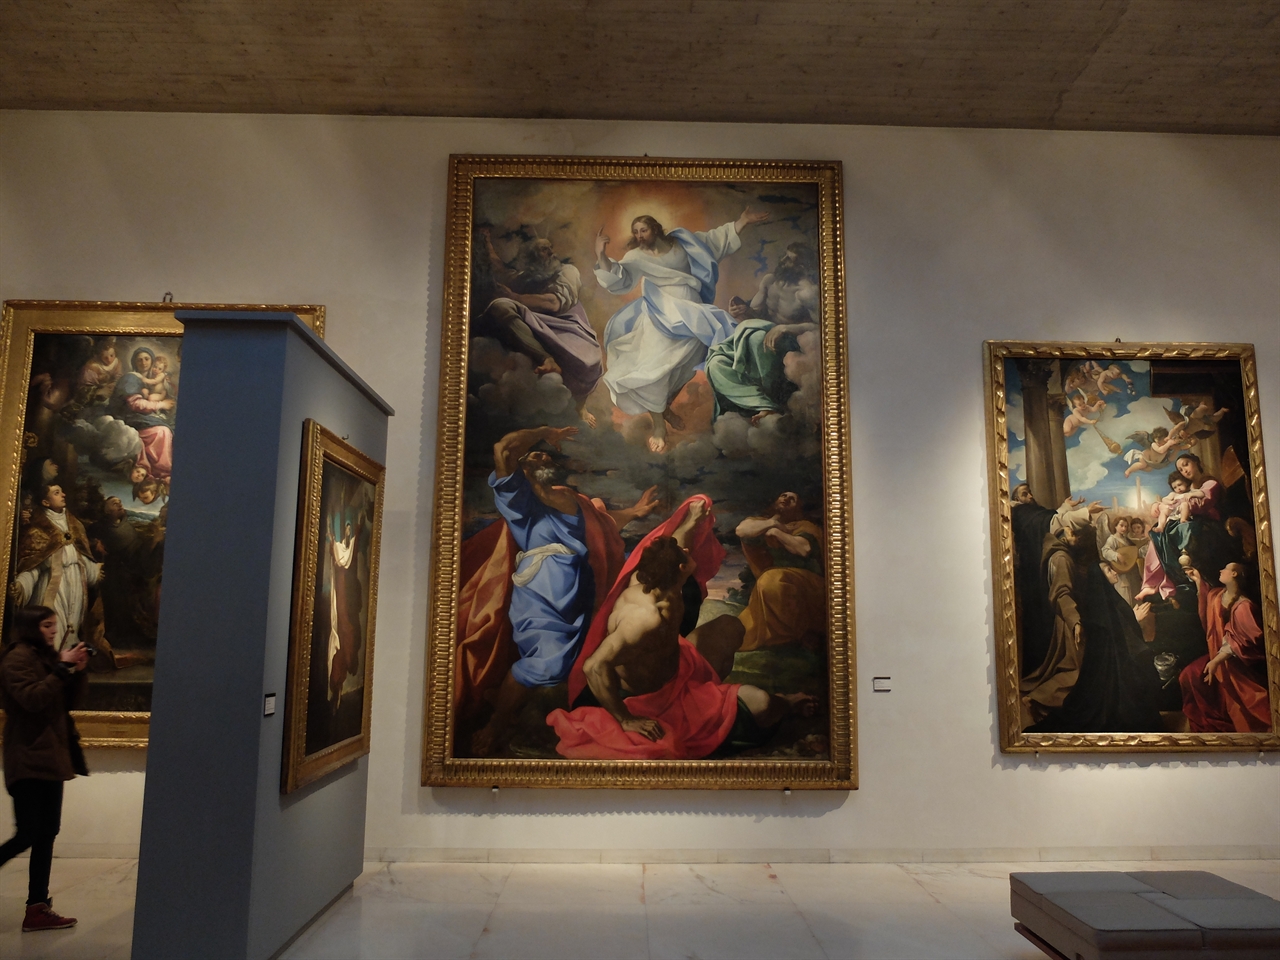 로도비코 카라치, '그리스도의 승천' 외. 볼로냐 국립 회화관. 르네상스 대가들의 장점들을 연구하여 절충주의적 형태를 띠게 된 '볼로냐 화파'의 핵심적 작가 로도비코 카라치의 작품들입니다. 